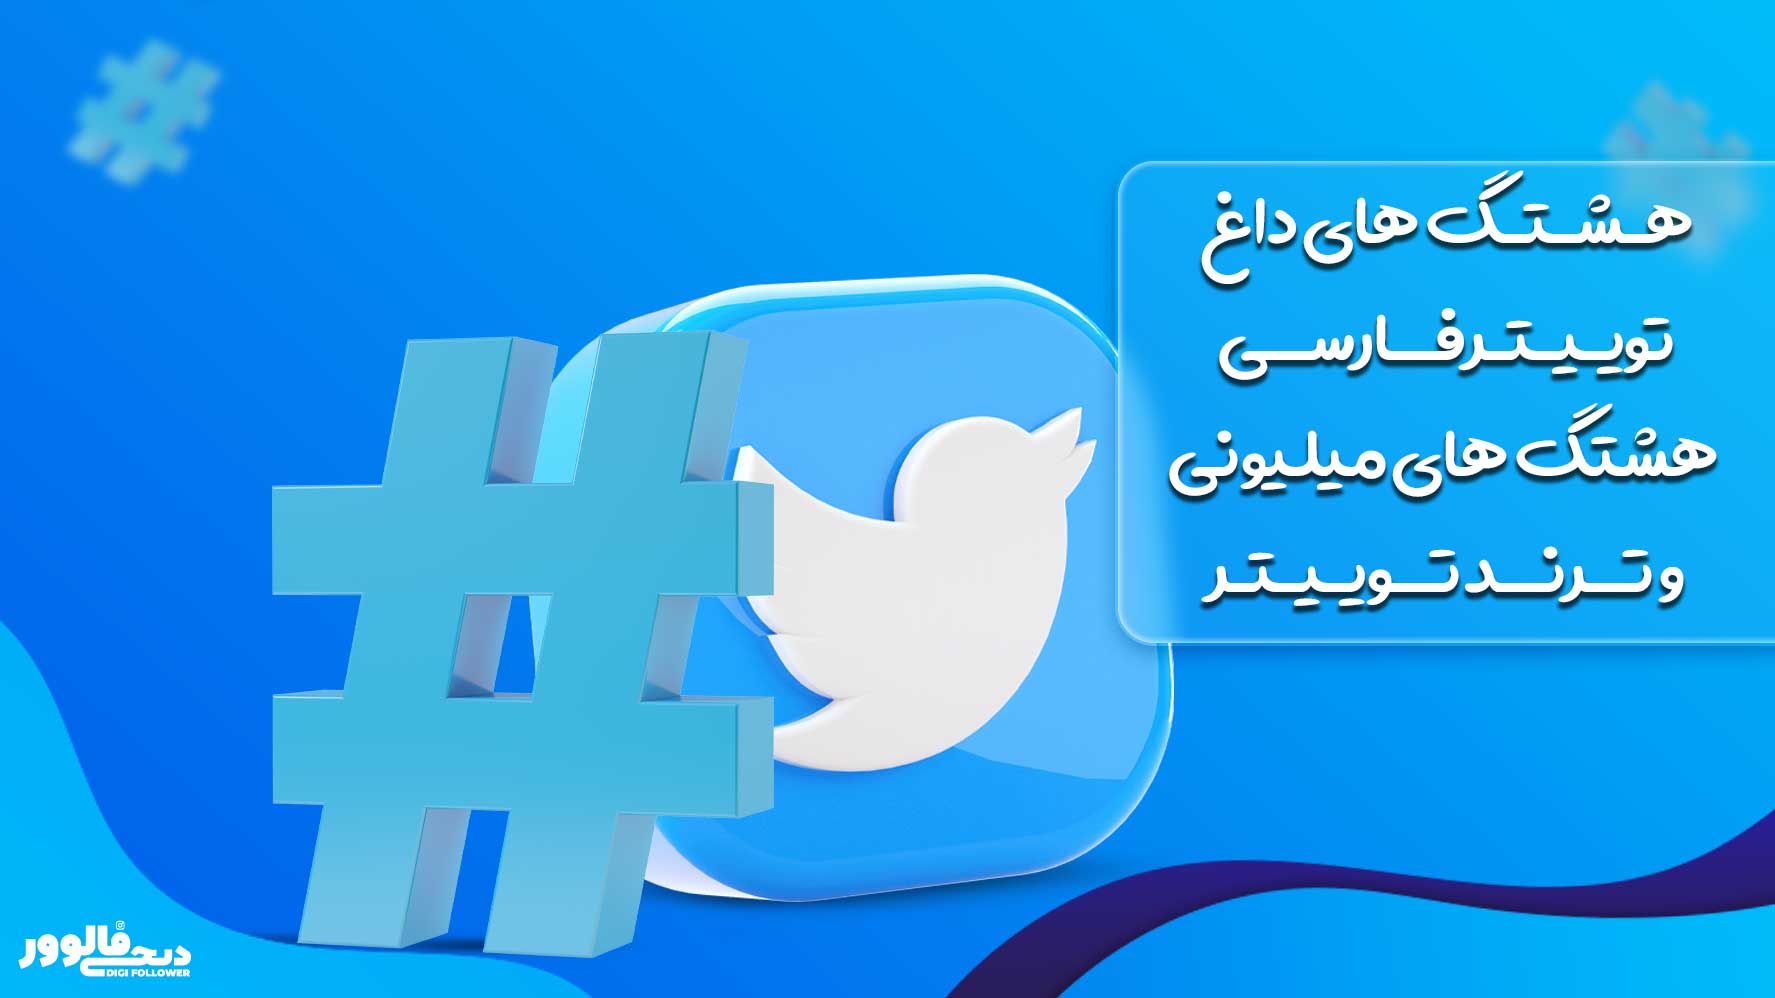 هشتگ های داغ توییتر فارسی، هشتگ های میلیونی و ترند توییتر